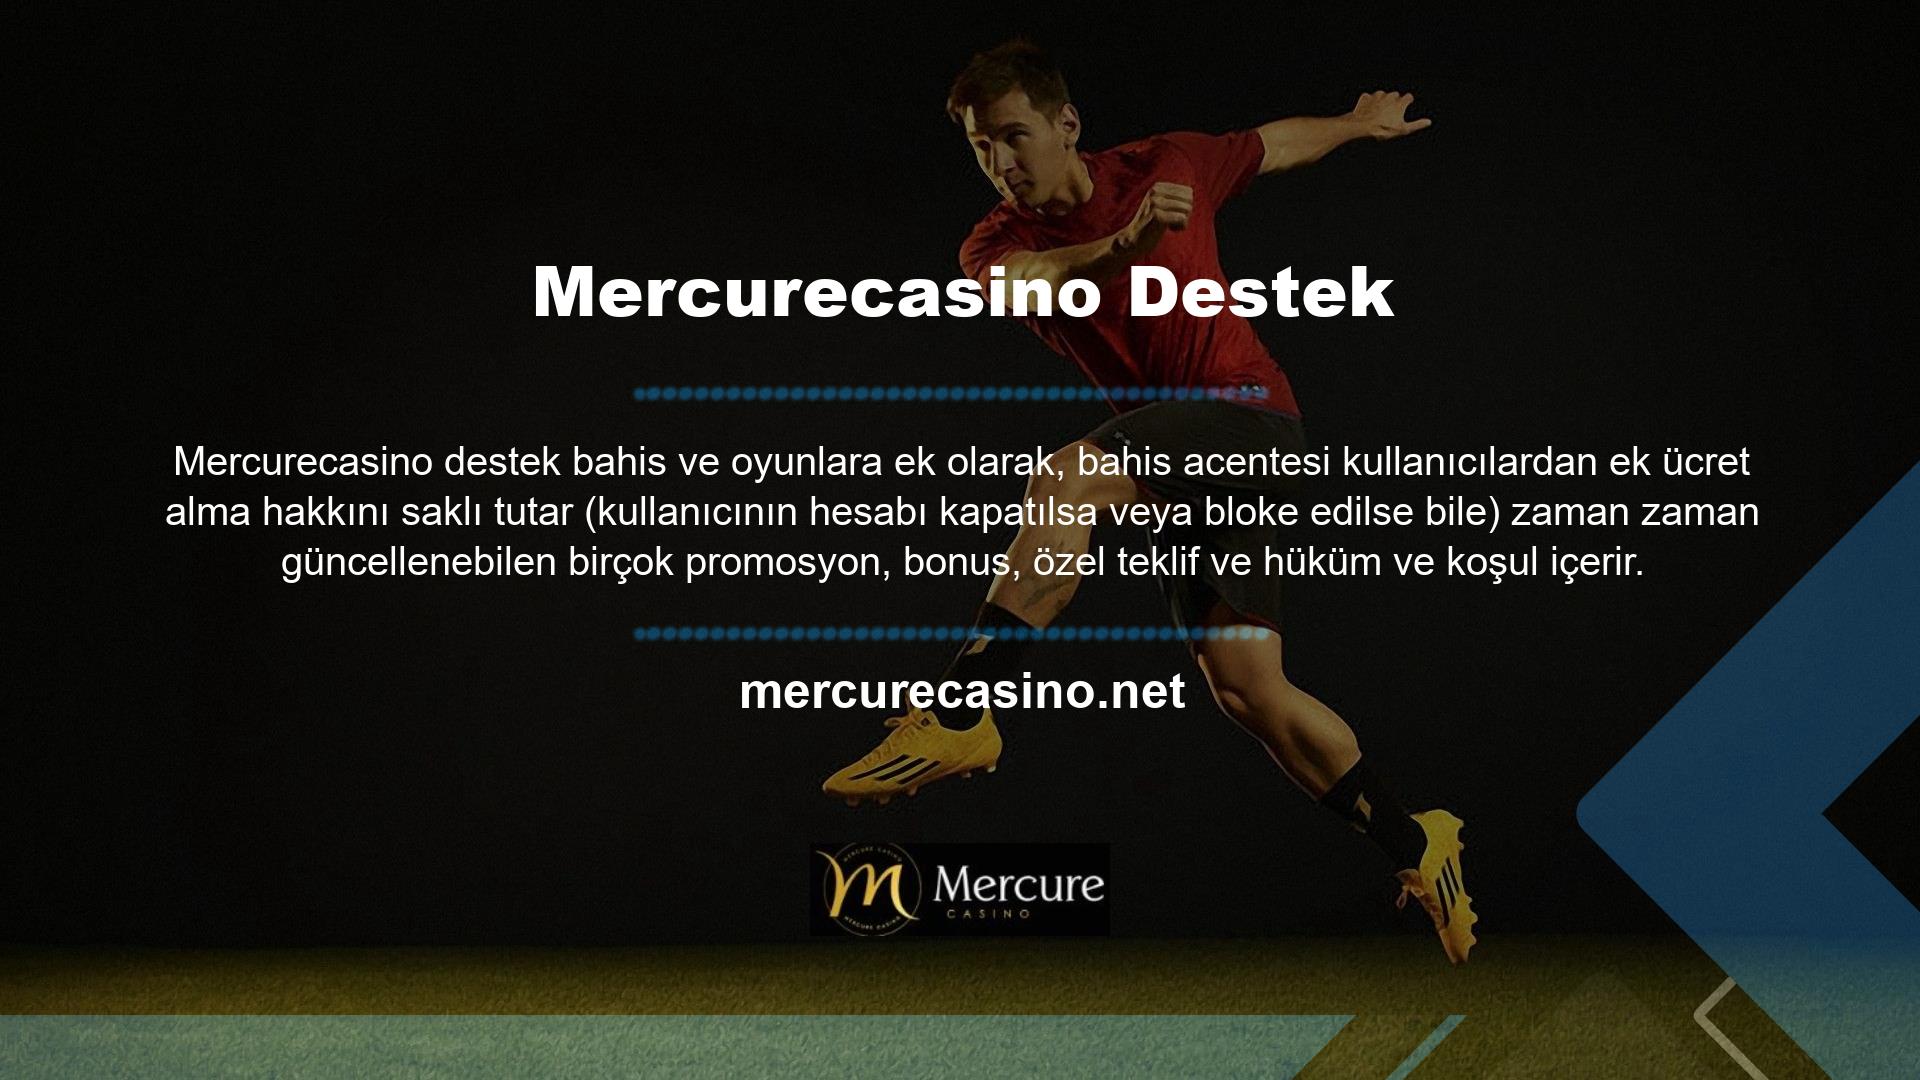 Mercurecasino Web Sitesi'nde belirtilen tüm kural ve koşullar toplu olarak "Kurallar" olarak anılmaktadır